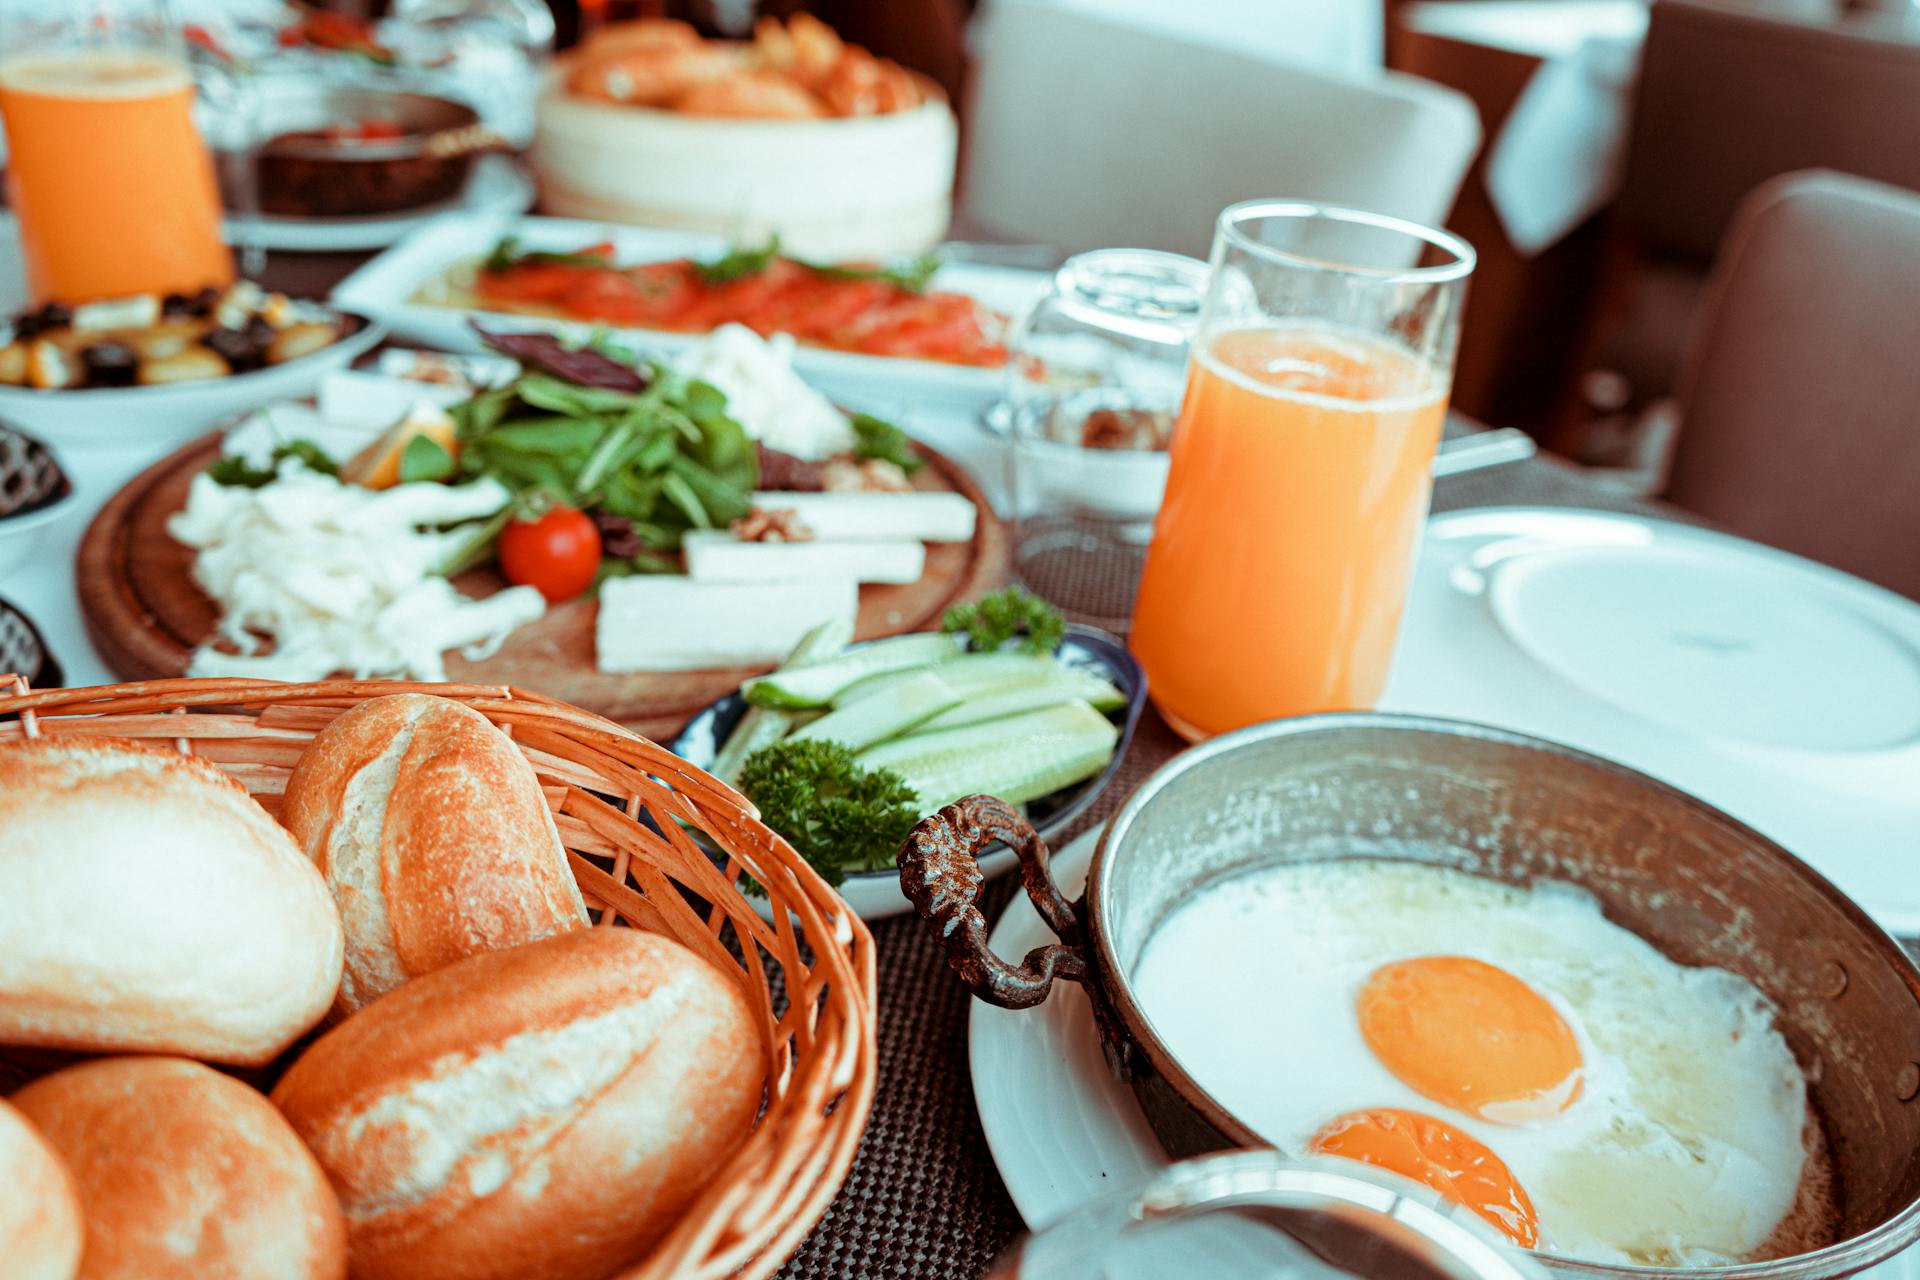 Petit déjeuner servi sur la table | Source : Pexels